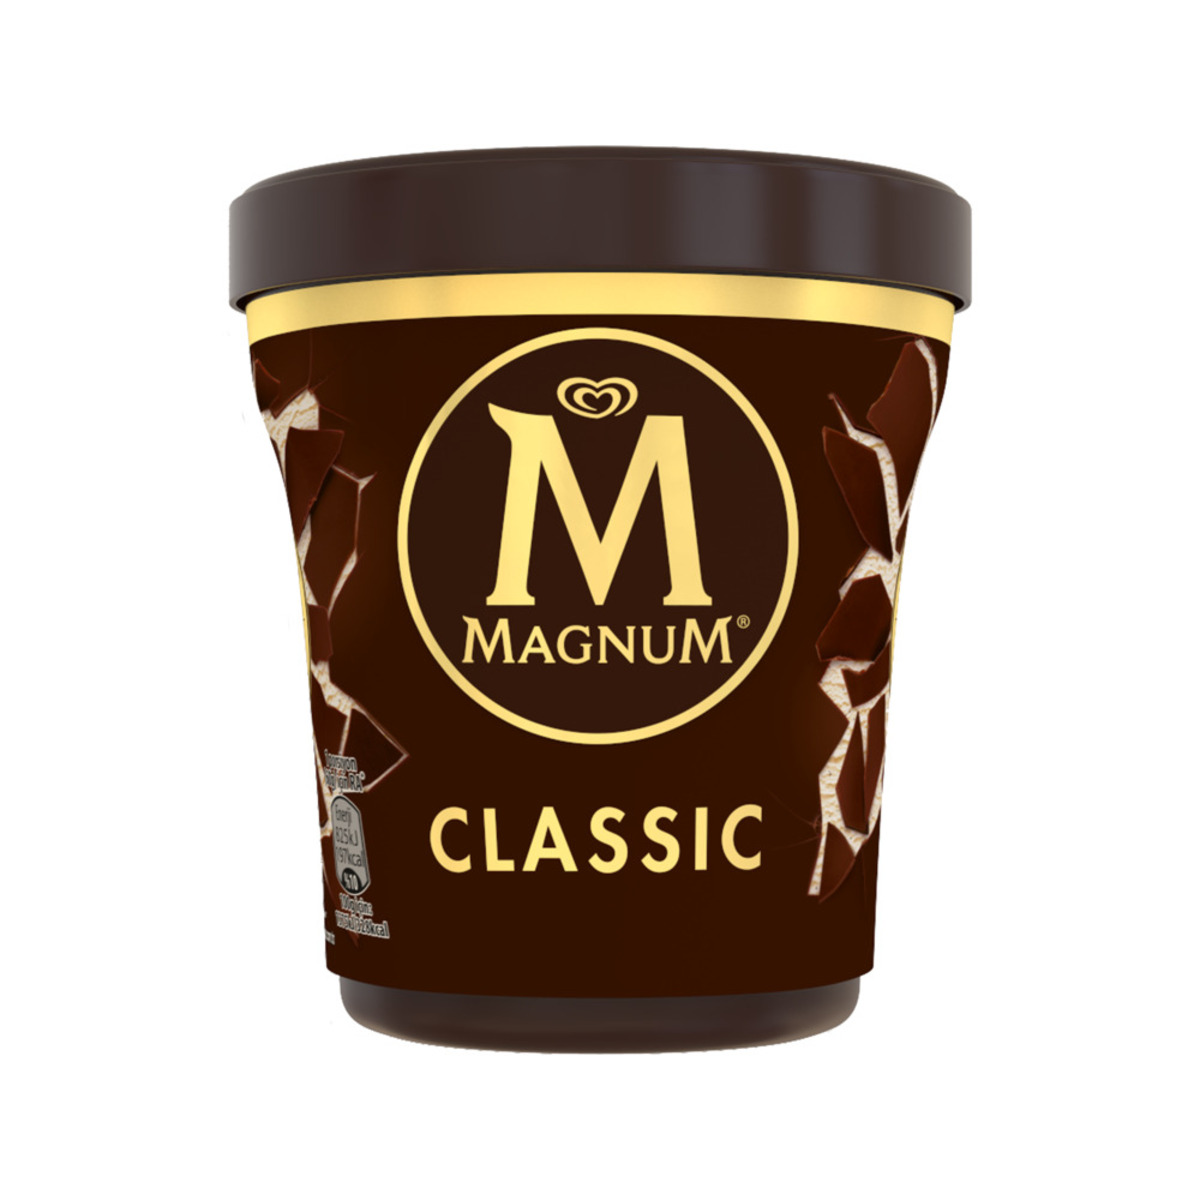 اشتري قم بشراء ماجنوم علبة آيس كريم كلاسيك 440 مل Online at Best Price من الموقع - من لولو هايبر ماركت Ice Cream Take Home في الامارات